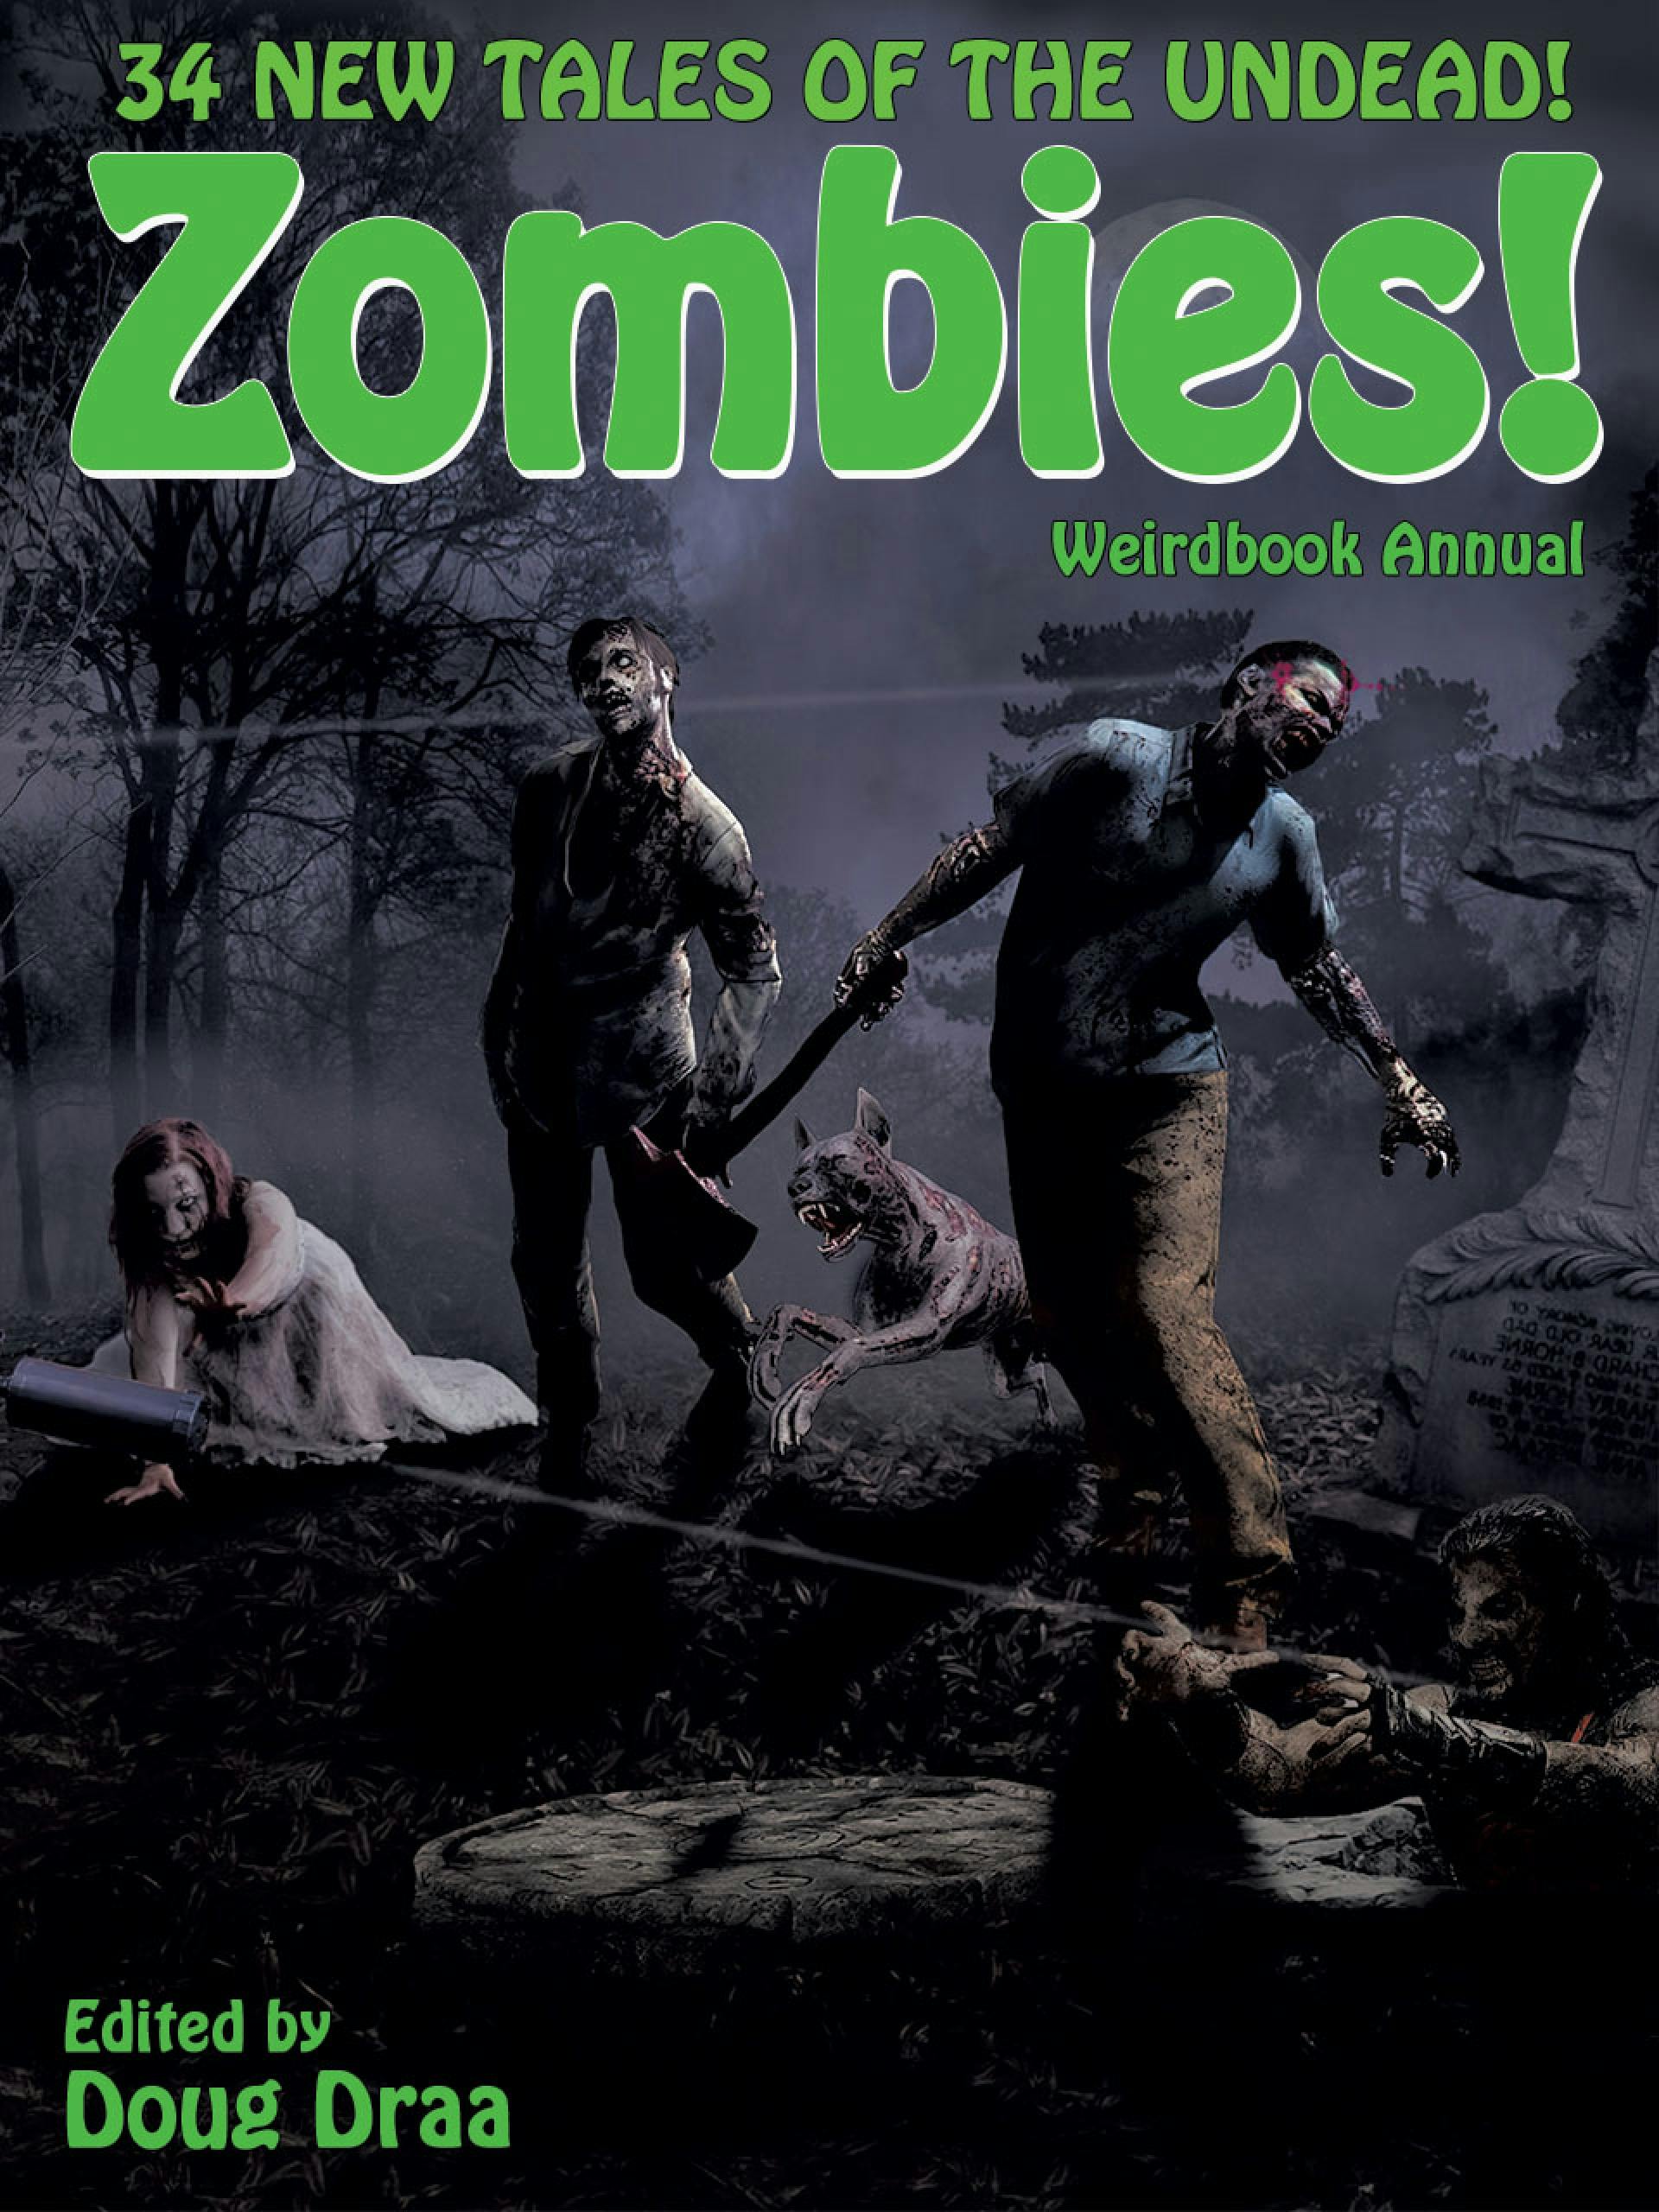 Weirdbook Annual: Zombies! - undefined